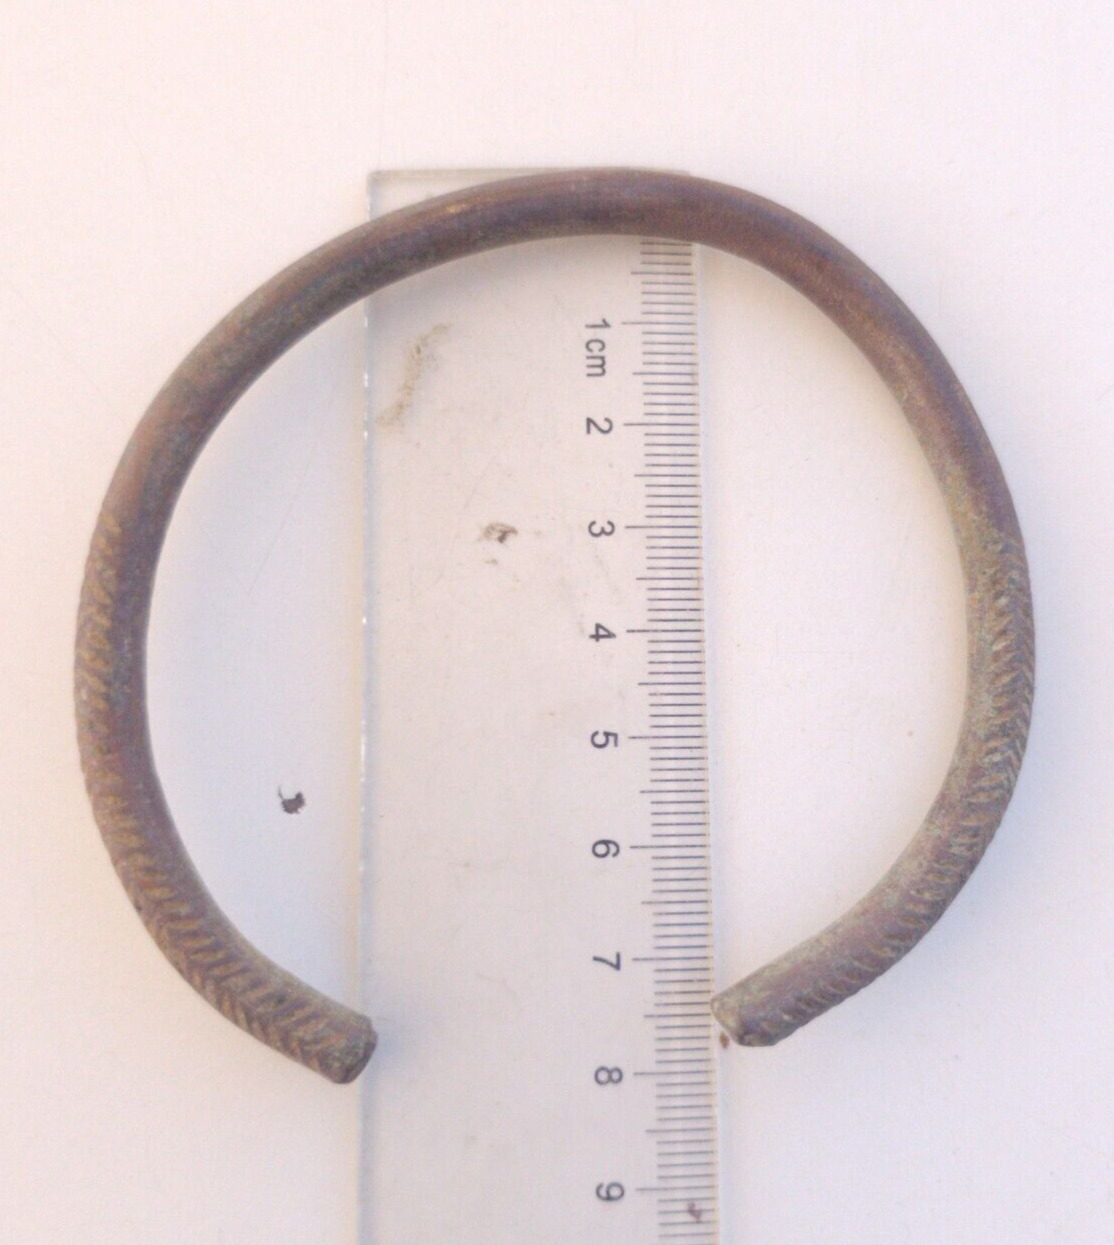 Genuine Antique Ancient Roman Celtic Bronze Bracelet Circa 100 AD - 300 AD